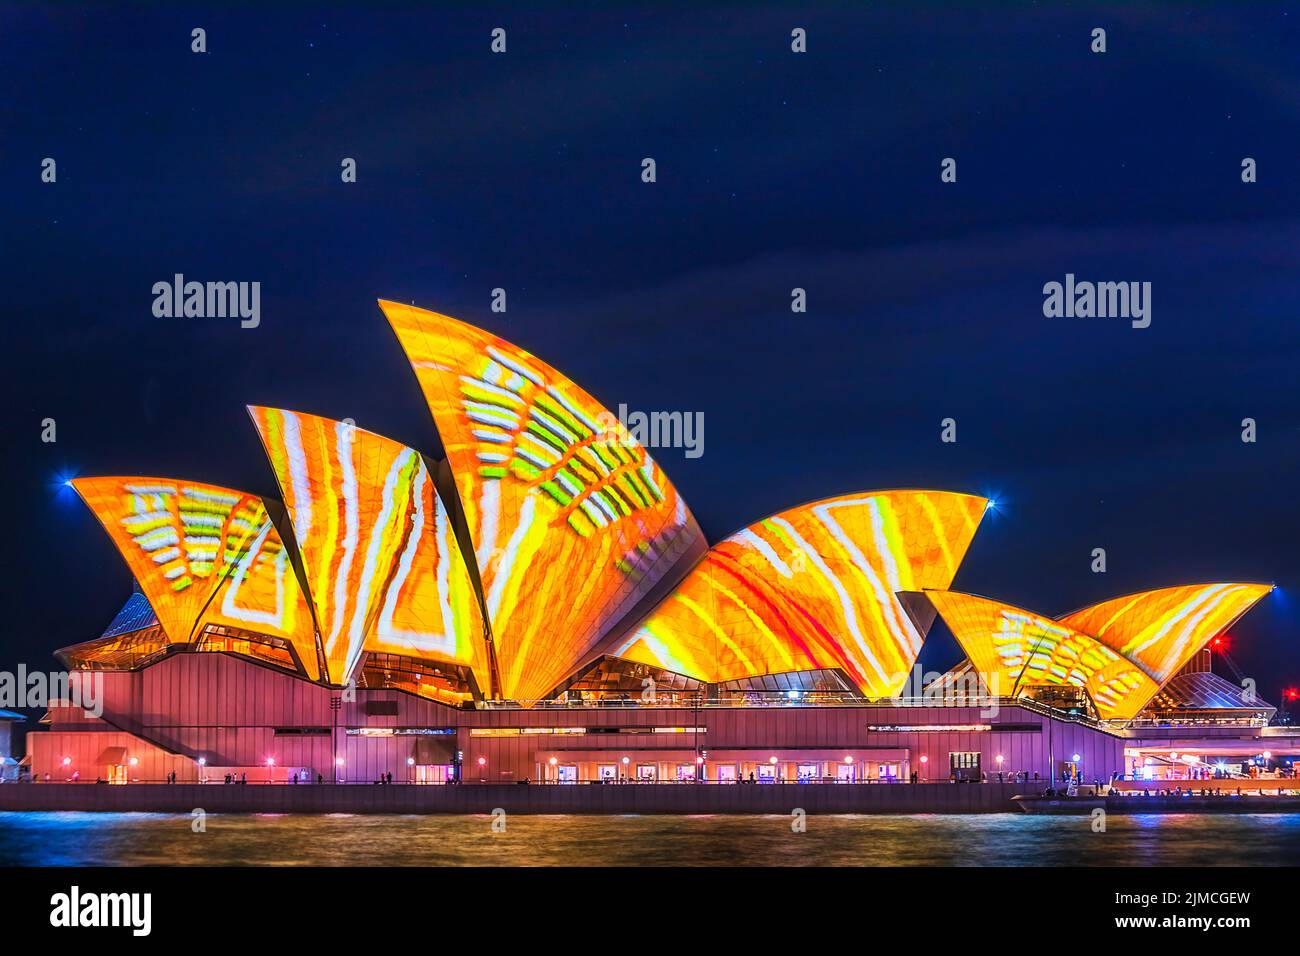 Sydney, Australie - 1 juin 2022 : l'opéra de Sydney projette des images et des traces de lumière pendant le festival du spectacle lumineux Vivid Sydney. Banque D'Images